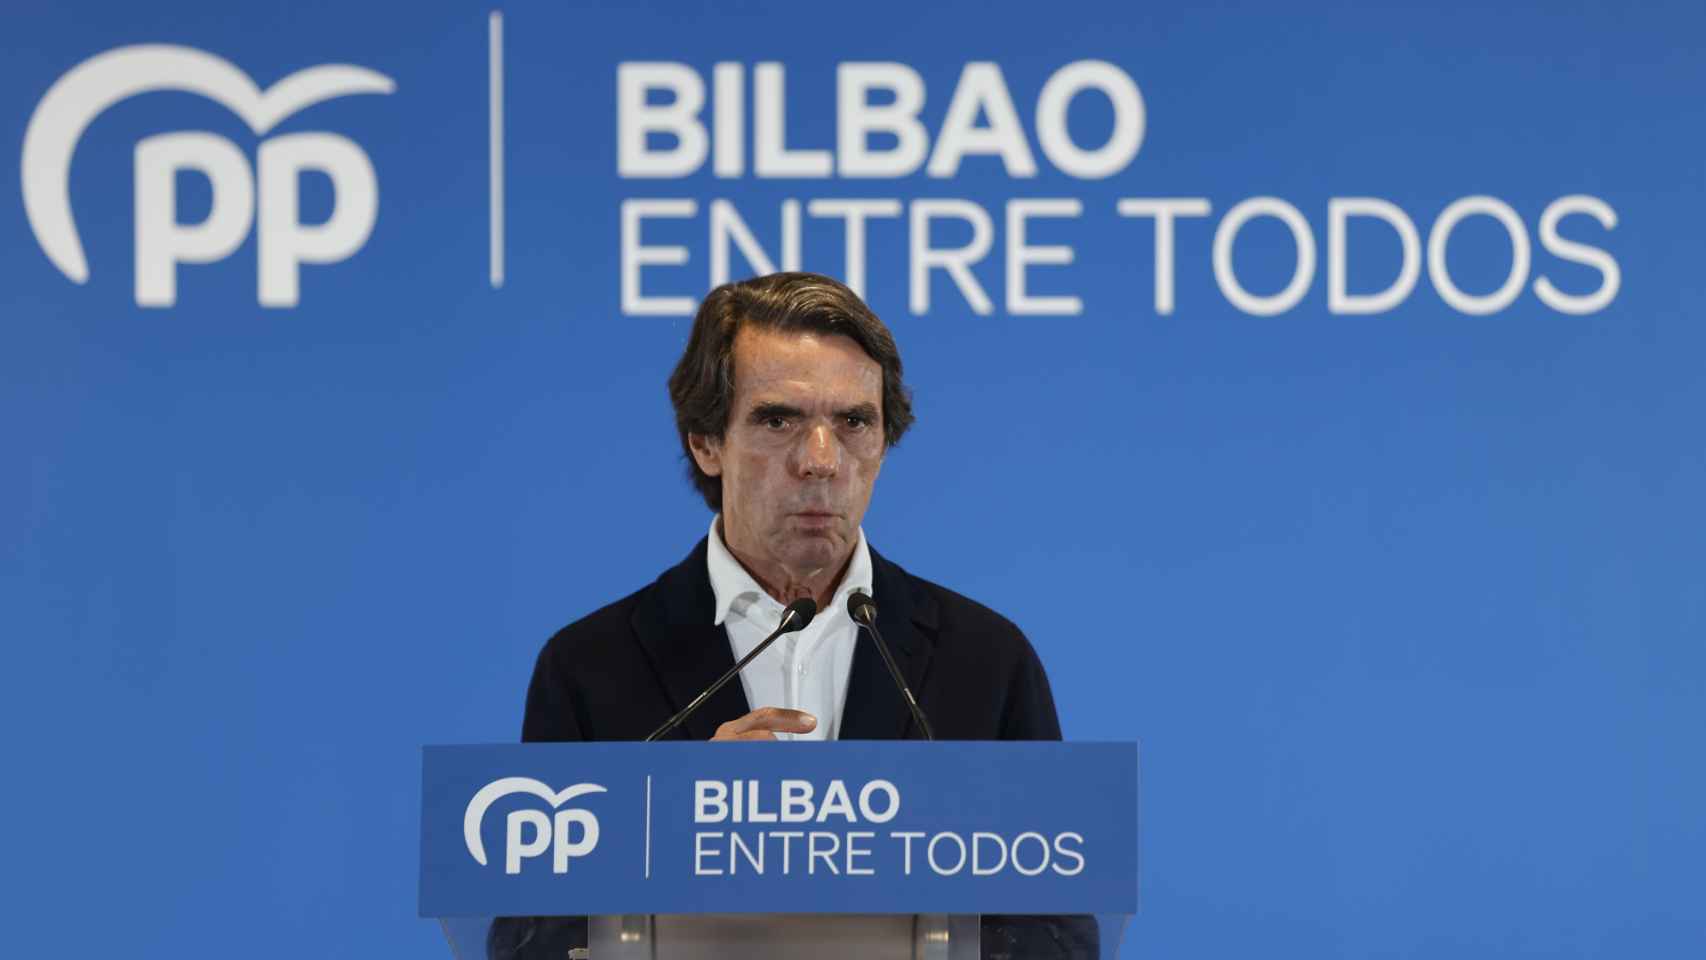 El expresidente del Gobierno José María Aznar, durante un mitin electoral en Bilbao / Luis Tejido - EFE